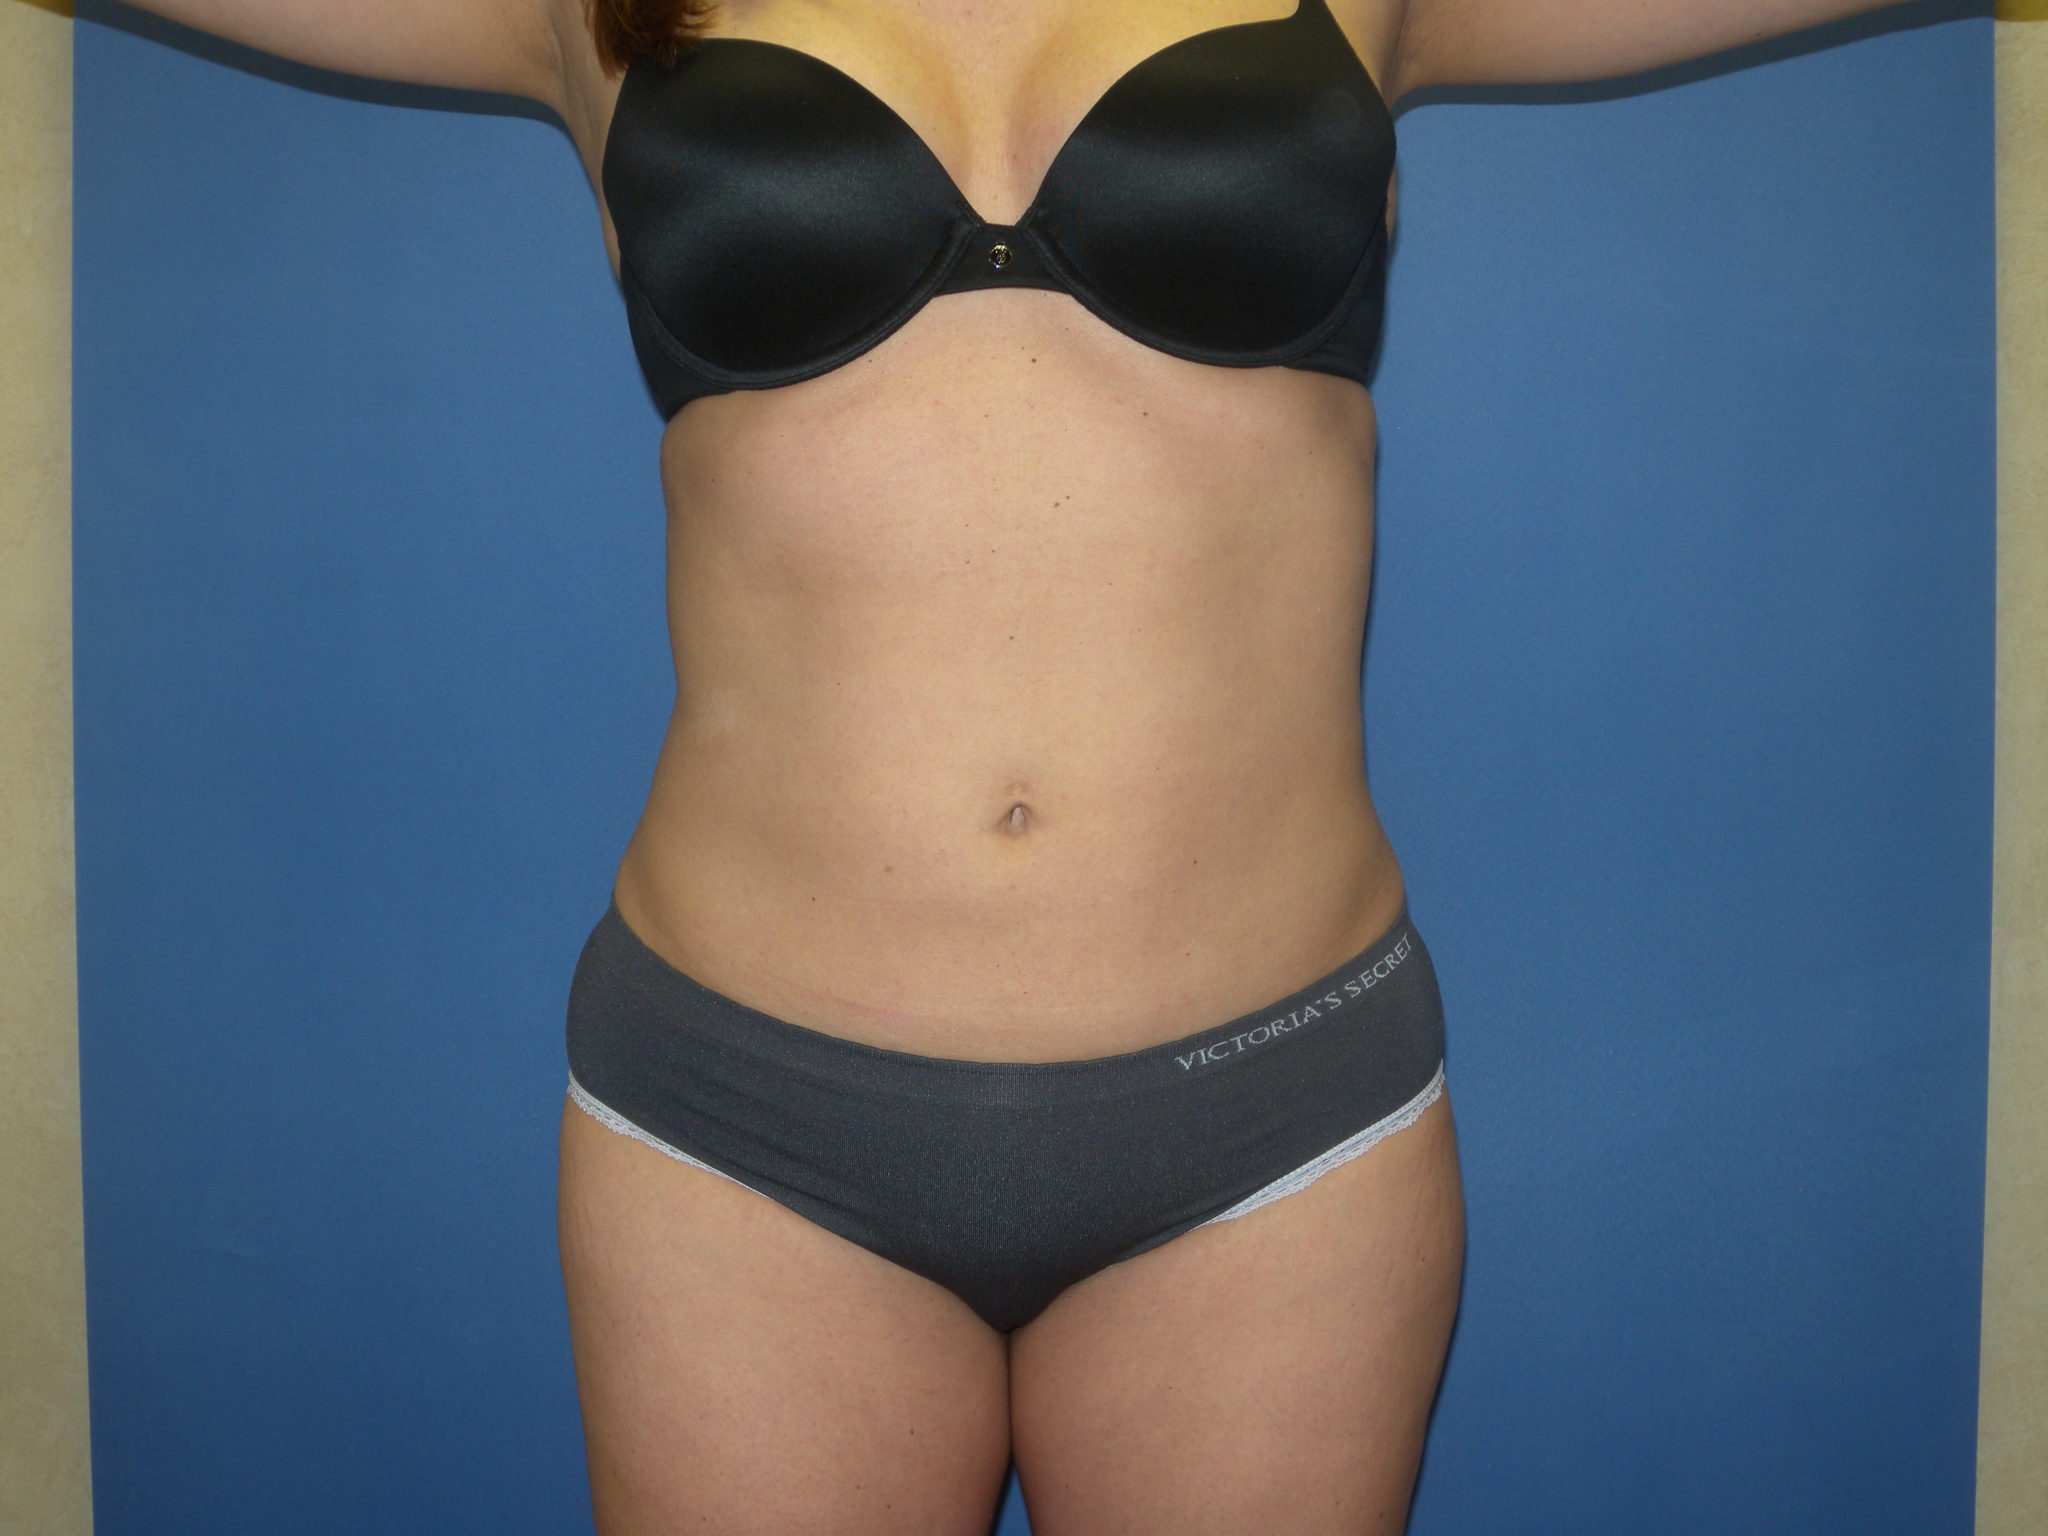 Liposuction Patient Photo - Case 3259 - after view